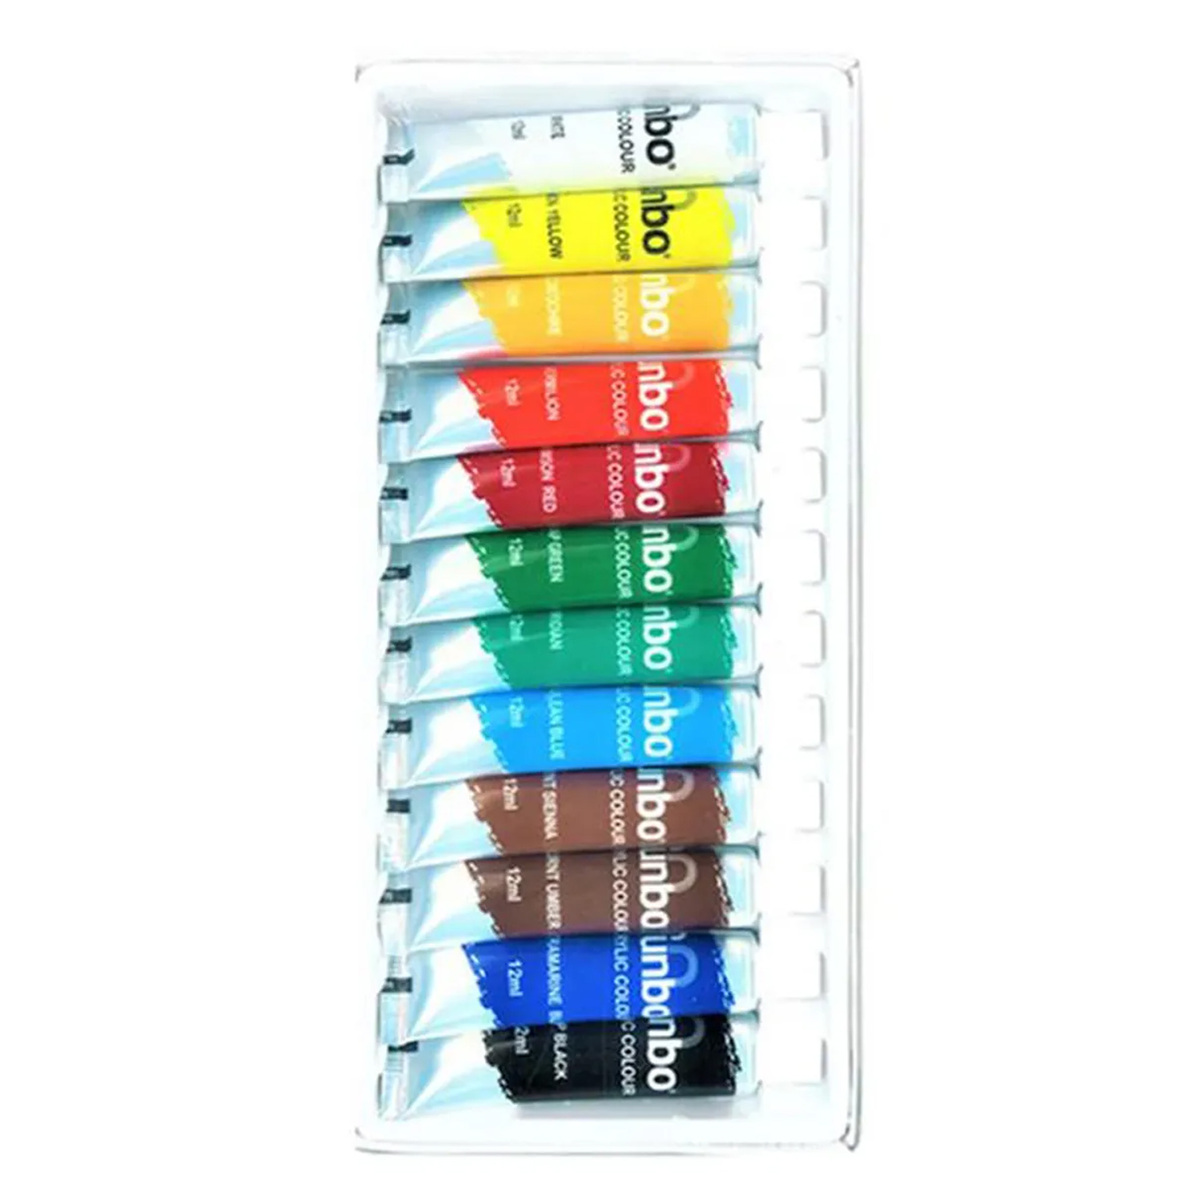 فانبو مجموعة ألوان مائية بطلاء الأكريليك 12 قطعة متنوعة الألوان، 12s-1212